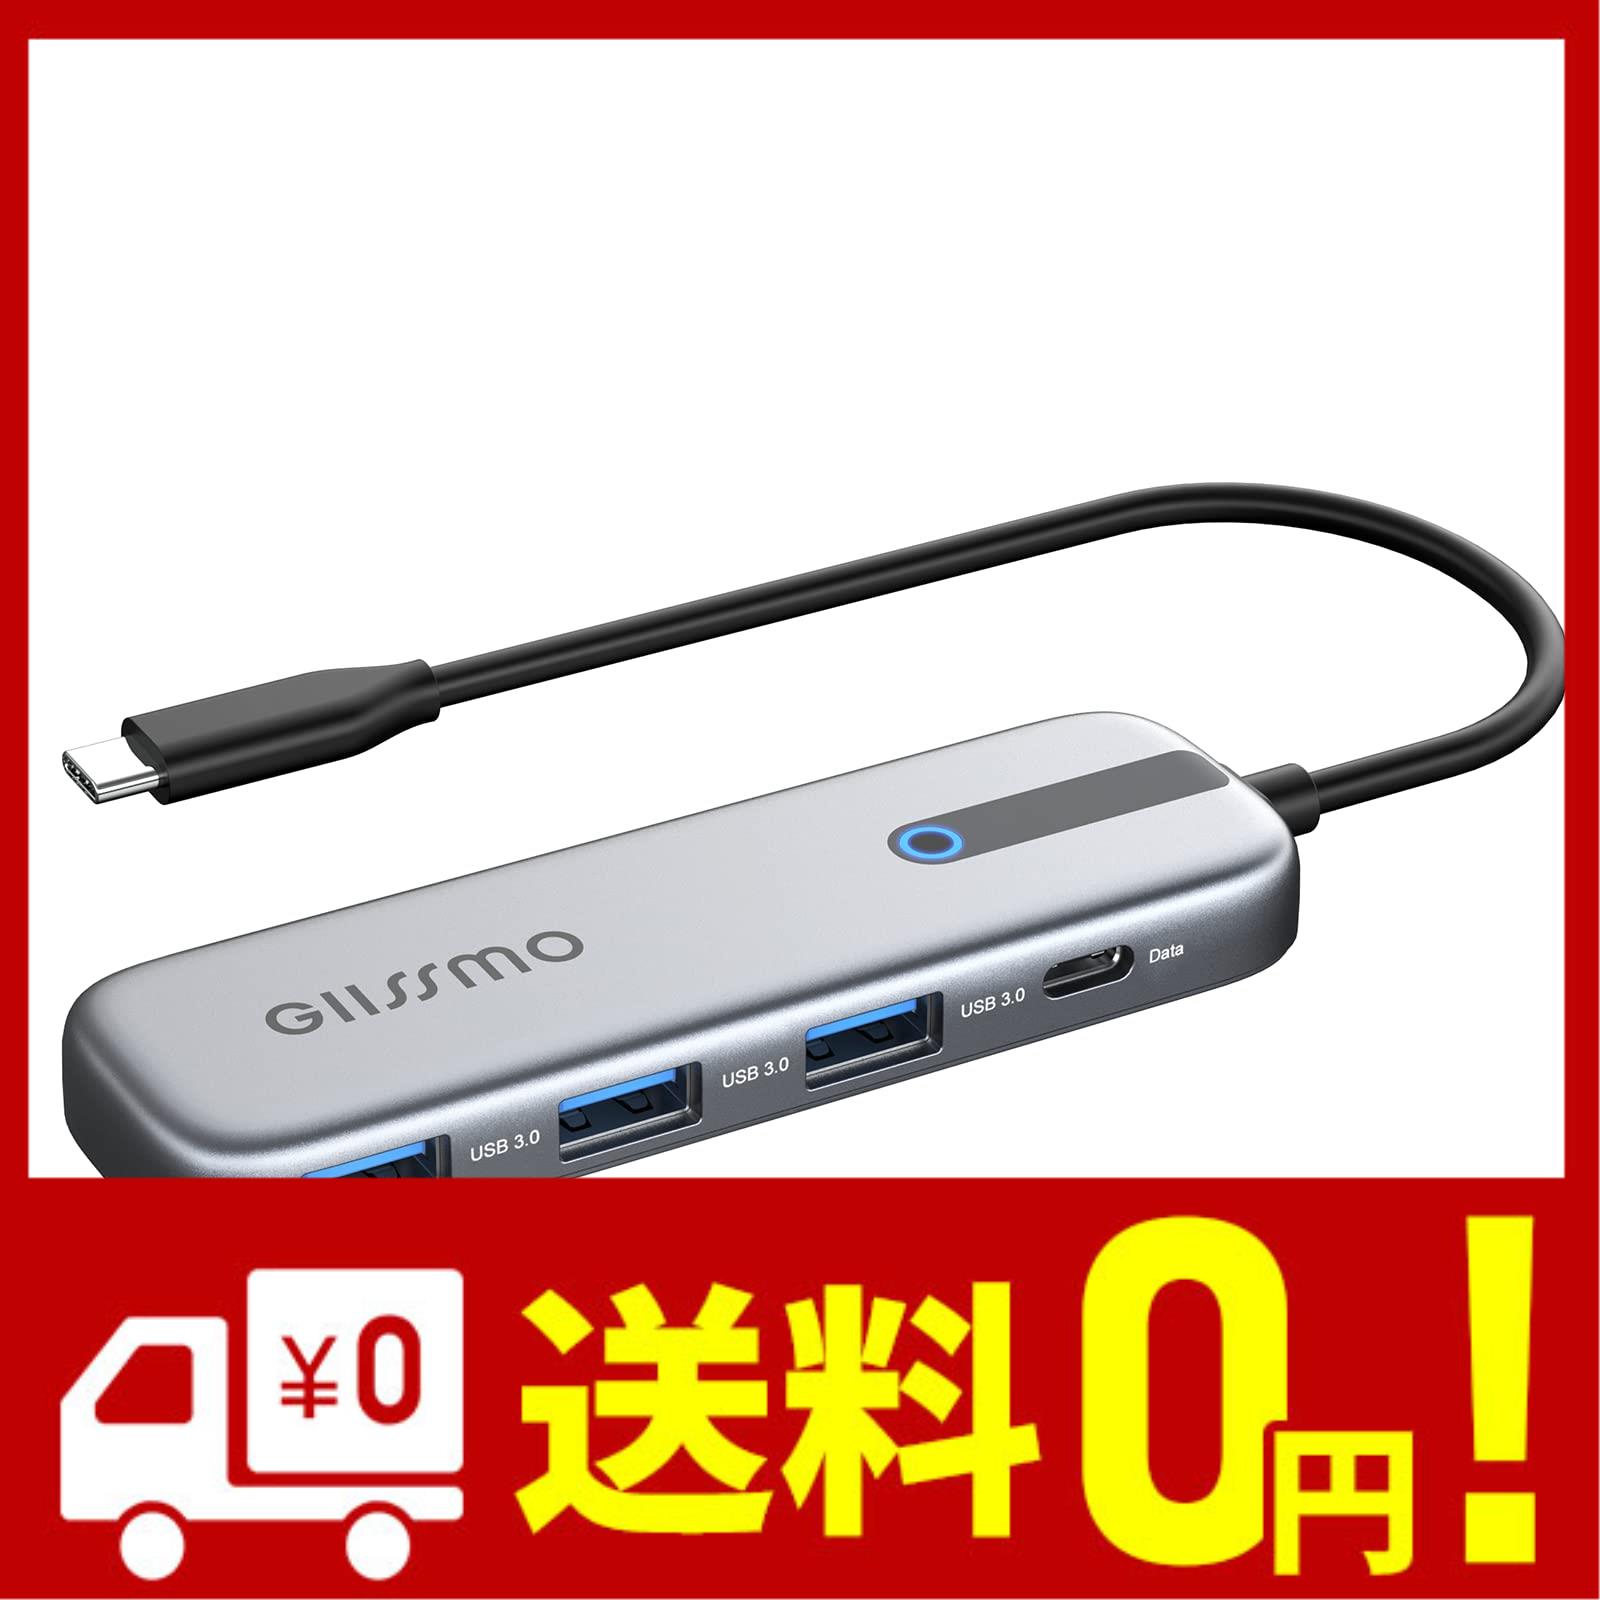 GIISSMO USB C ハブ 4-IN-1 USB ハブ Type-C 変換アダプタ 5Gbps高速データ転送 USB-A 3.0ポート 3 USB-C データ転送ポート 1 バスパワー